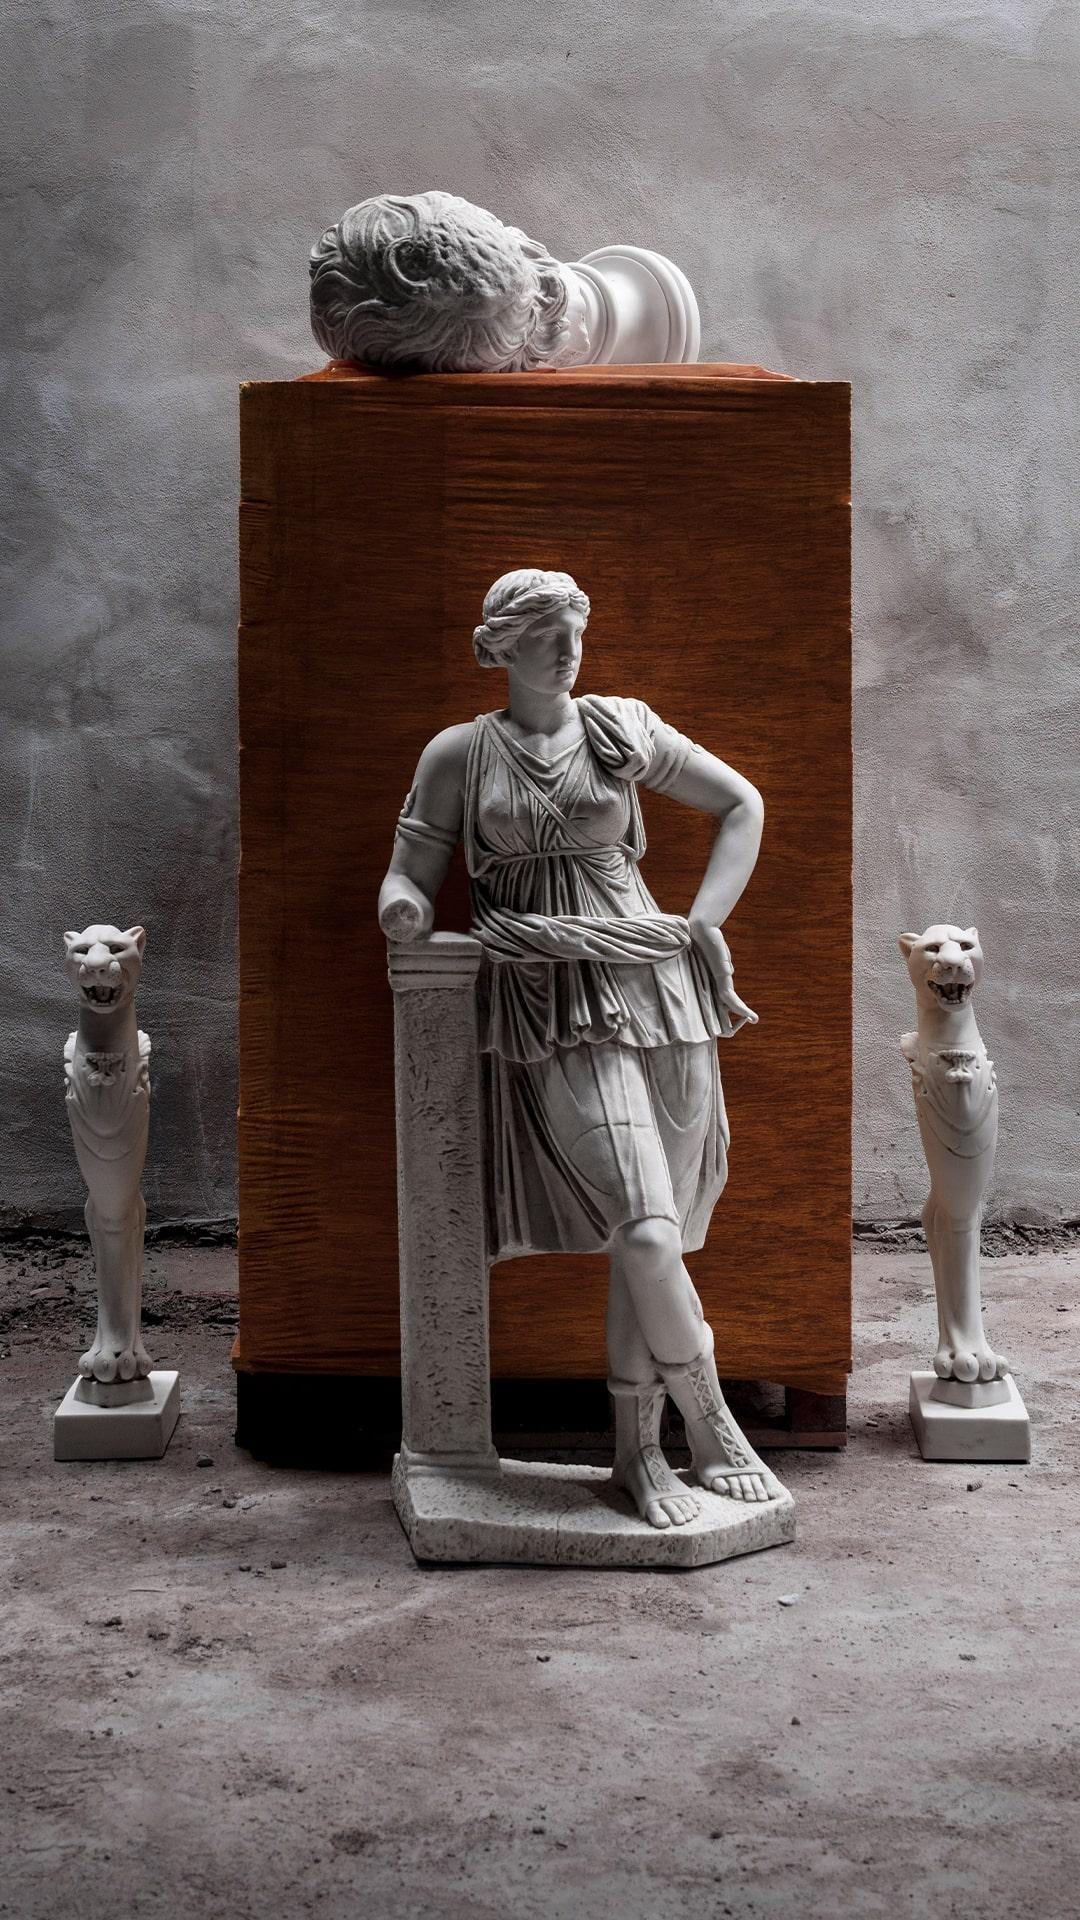 **VORLAUFZEIT 5 WOCHEN**

Die berühmte Artemis ist die Schwester von Apollo und Dionysos; sie ist in Anatolien mit Reichtum verbunden. Der Tempel der Artemis in Ephesus, der als eines der sieben Weltwunder der Antike gilt, wurde viele Male zerstört,